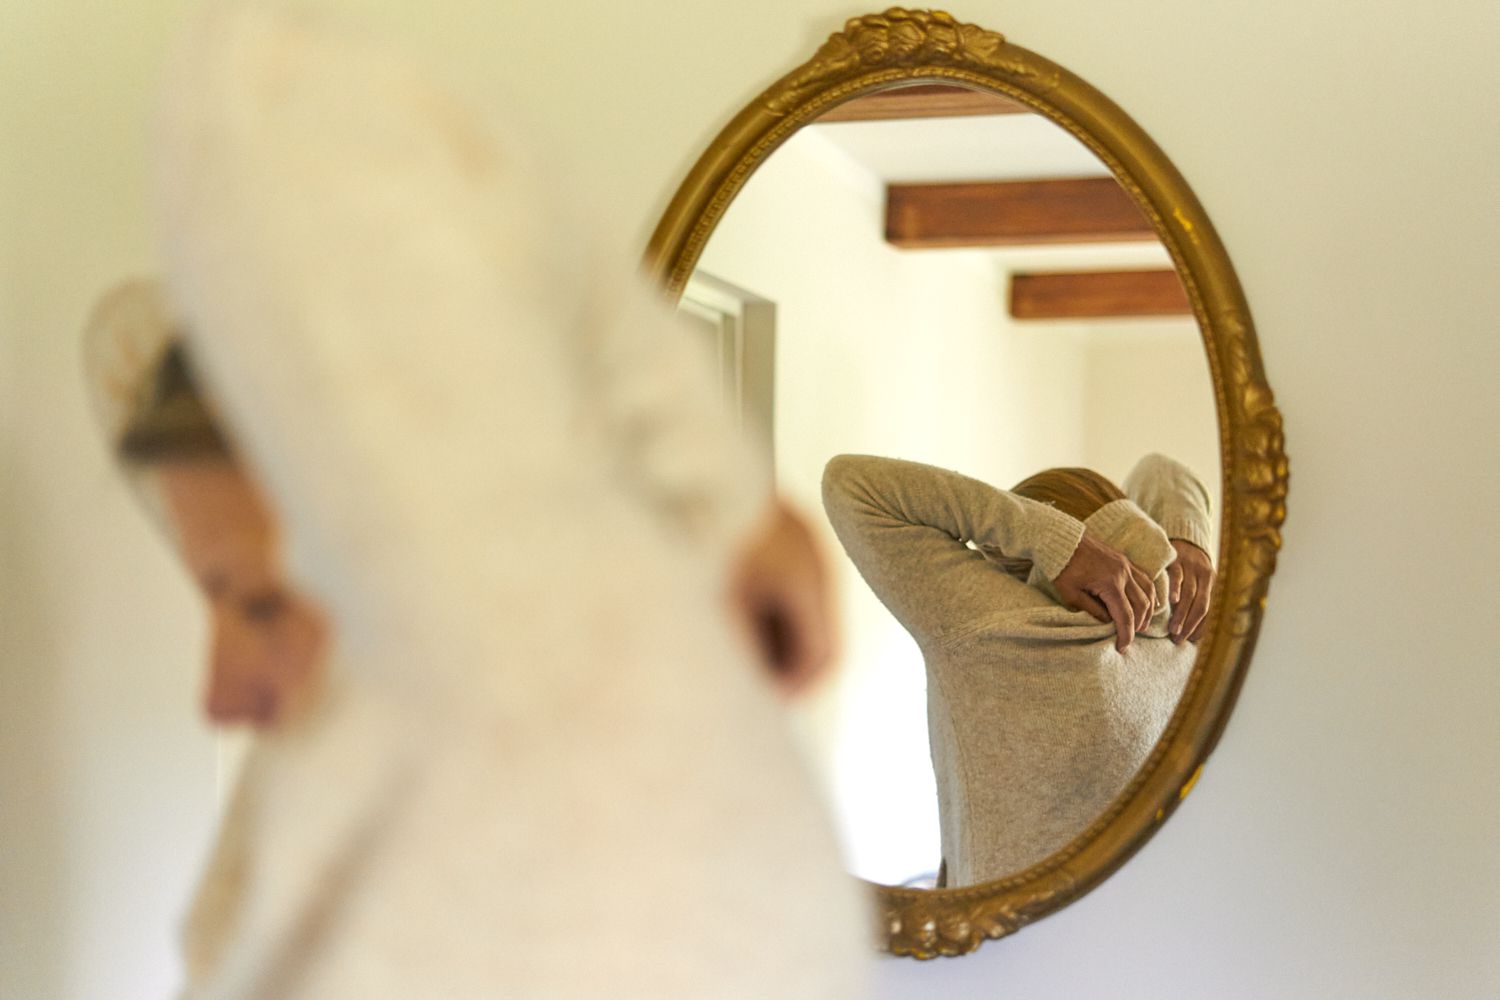 reflejo de una persona en un espejo ovalado dorado quitándose un jersey de color crema